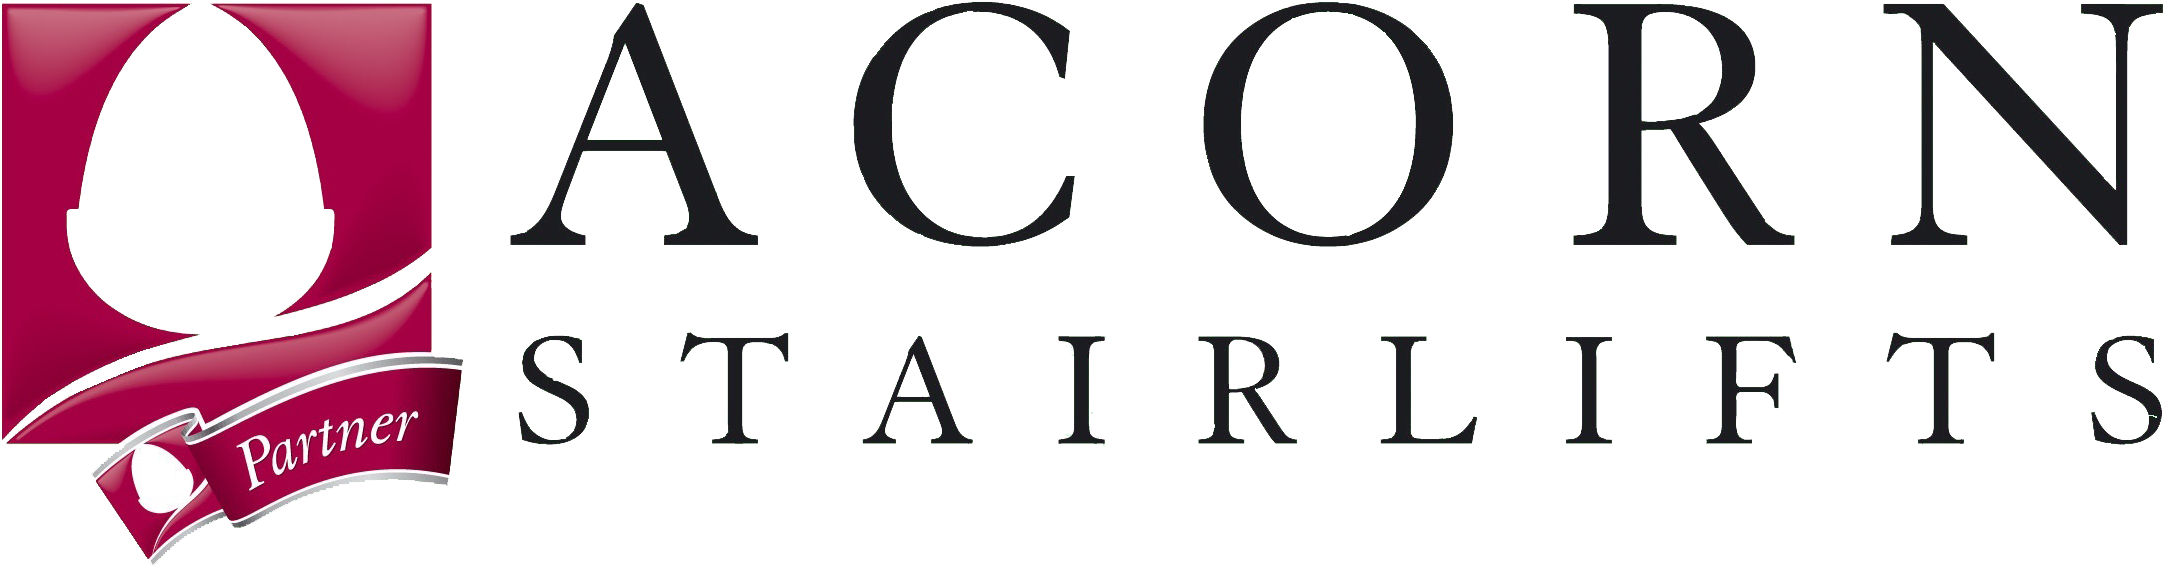 Acorn Partner Logo[1] - Acorn Stairlift Logo (2167x579)